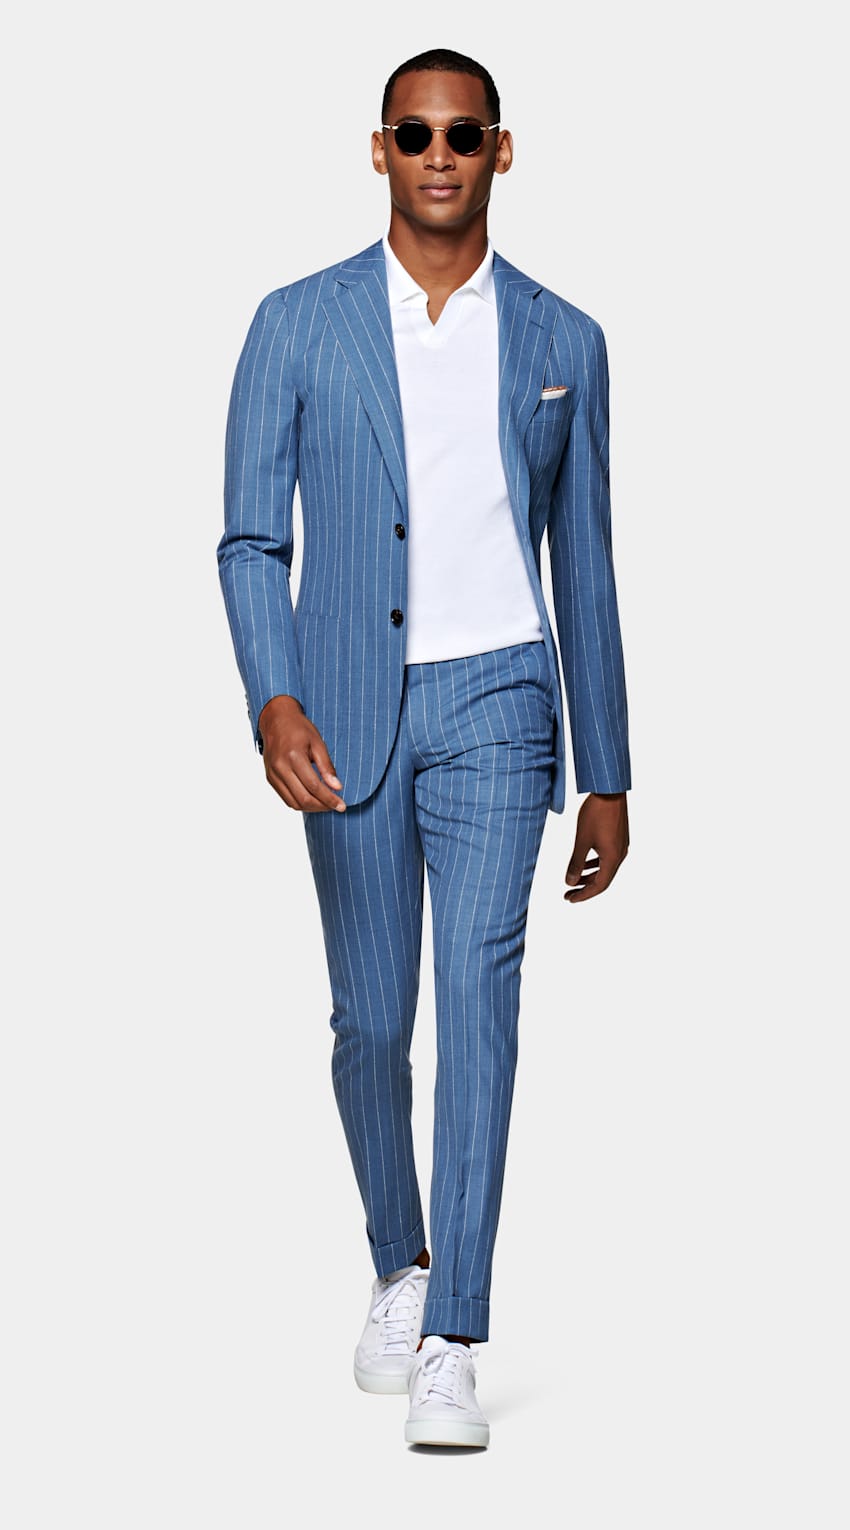 blue striped suit